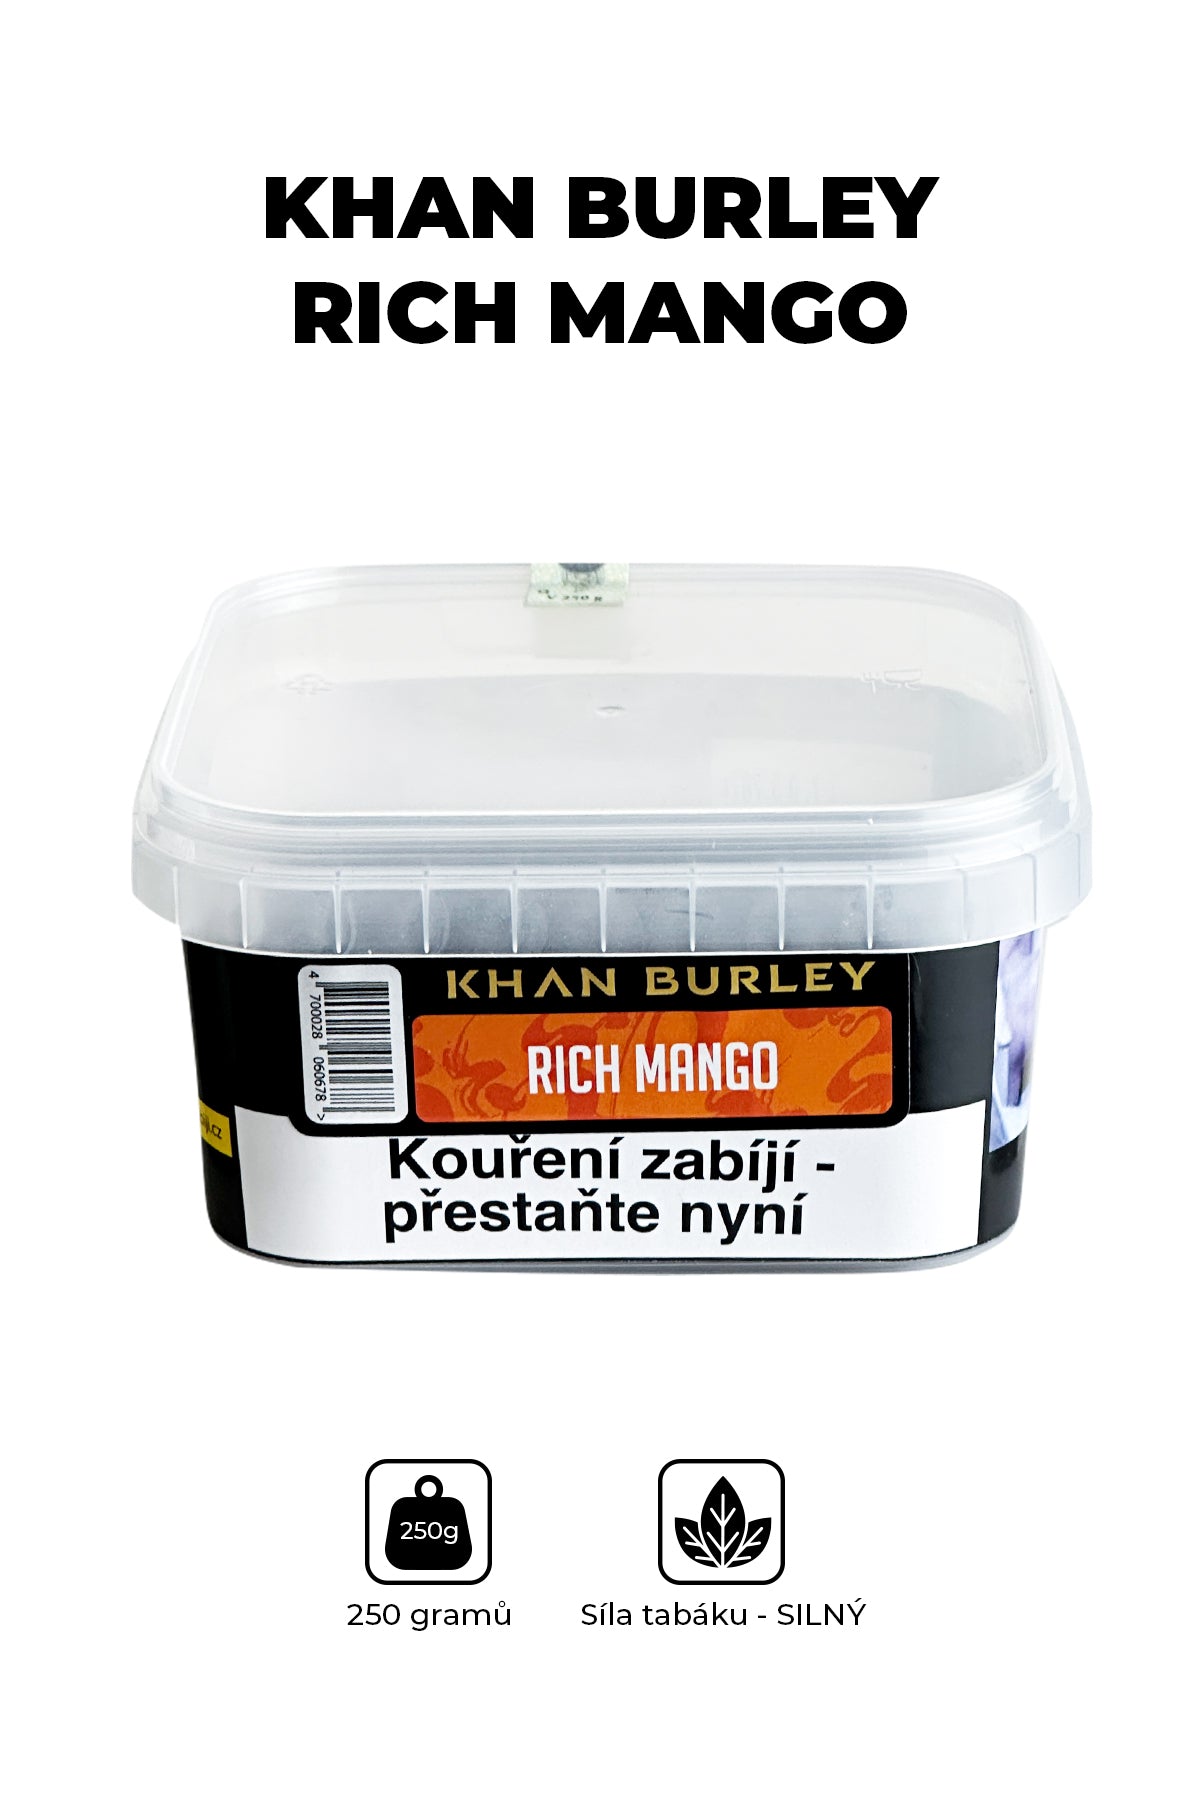 Tabák - Khan Burley 250g - Rich Mango